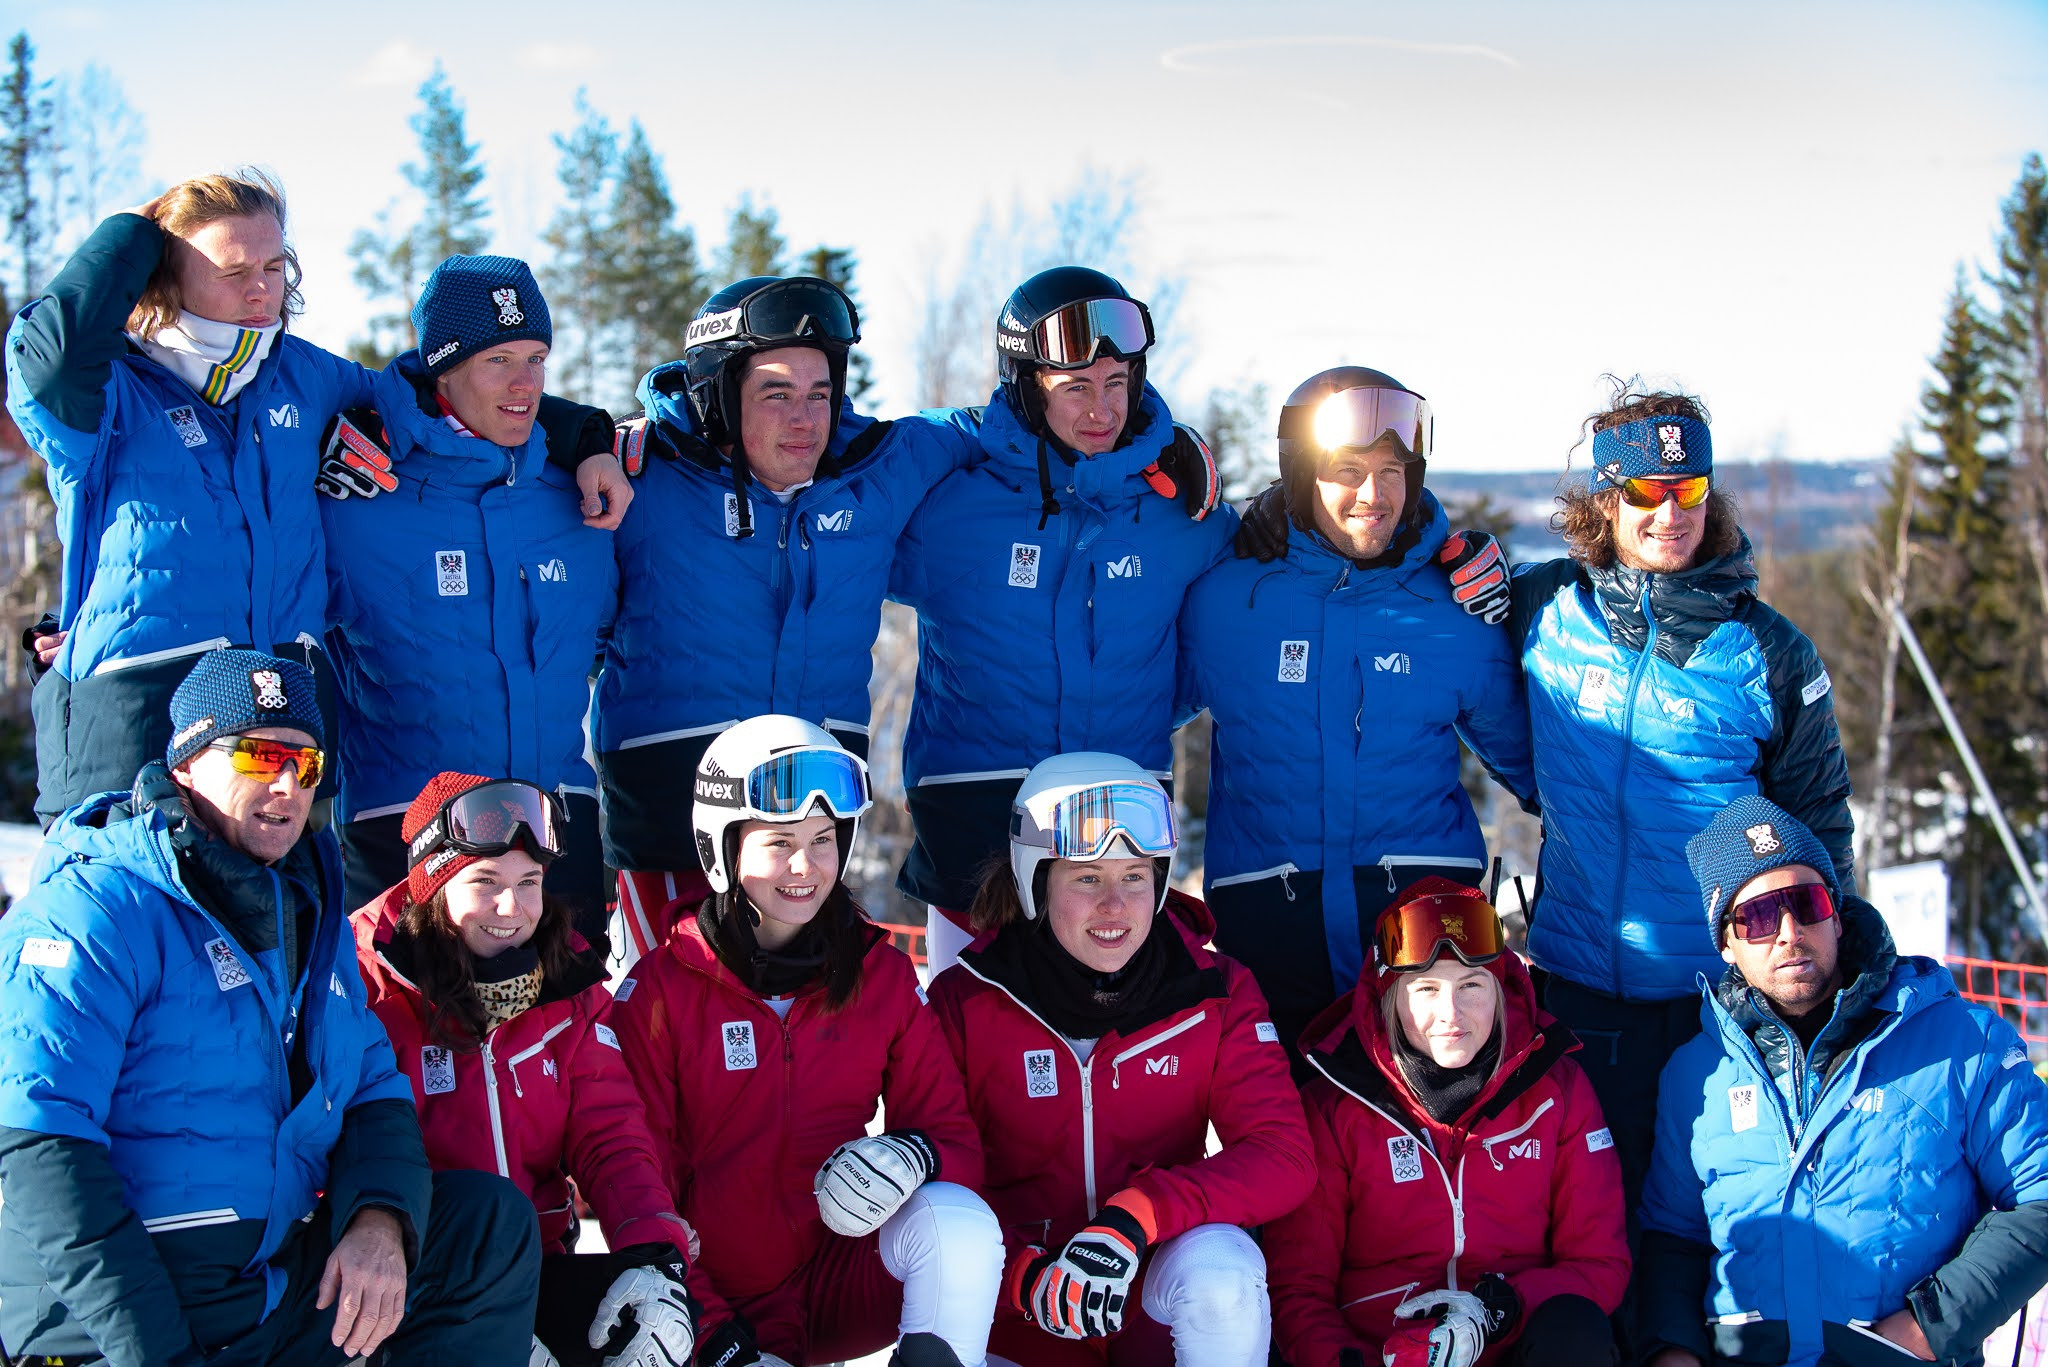 Austria claimed mixed team parallel gold in the Alpine skiing at the Winter EYOF in Vuokatii ©Hannu Kilpeläinen/EYOF 2022 Vuokatti